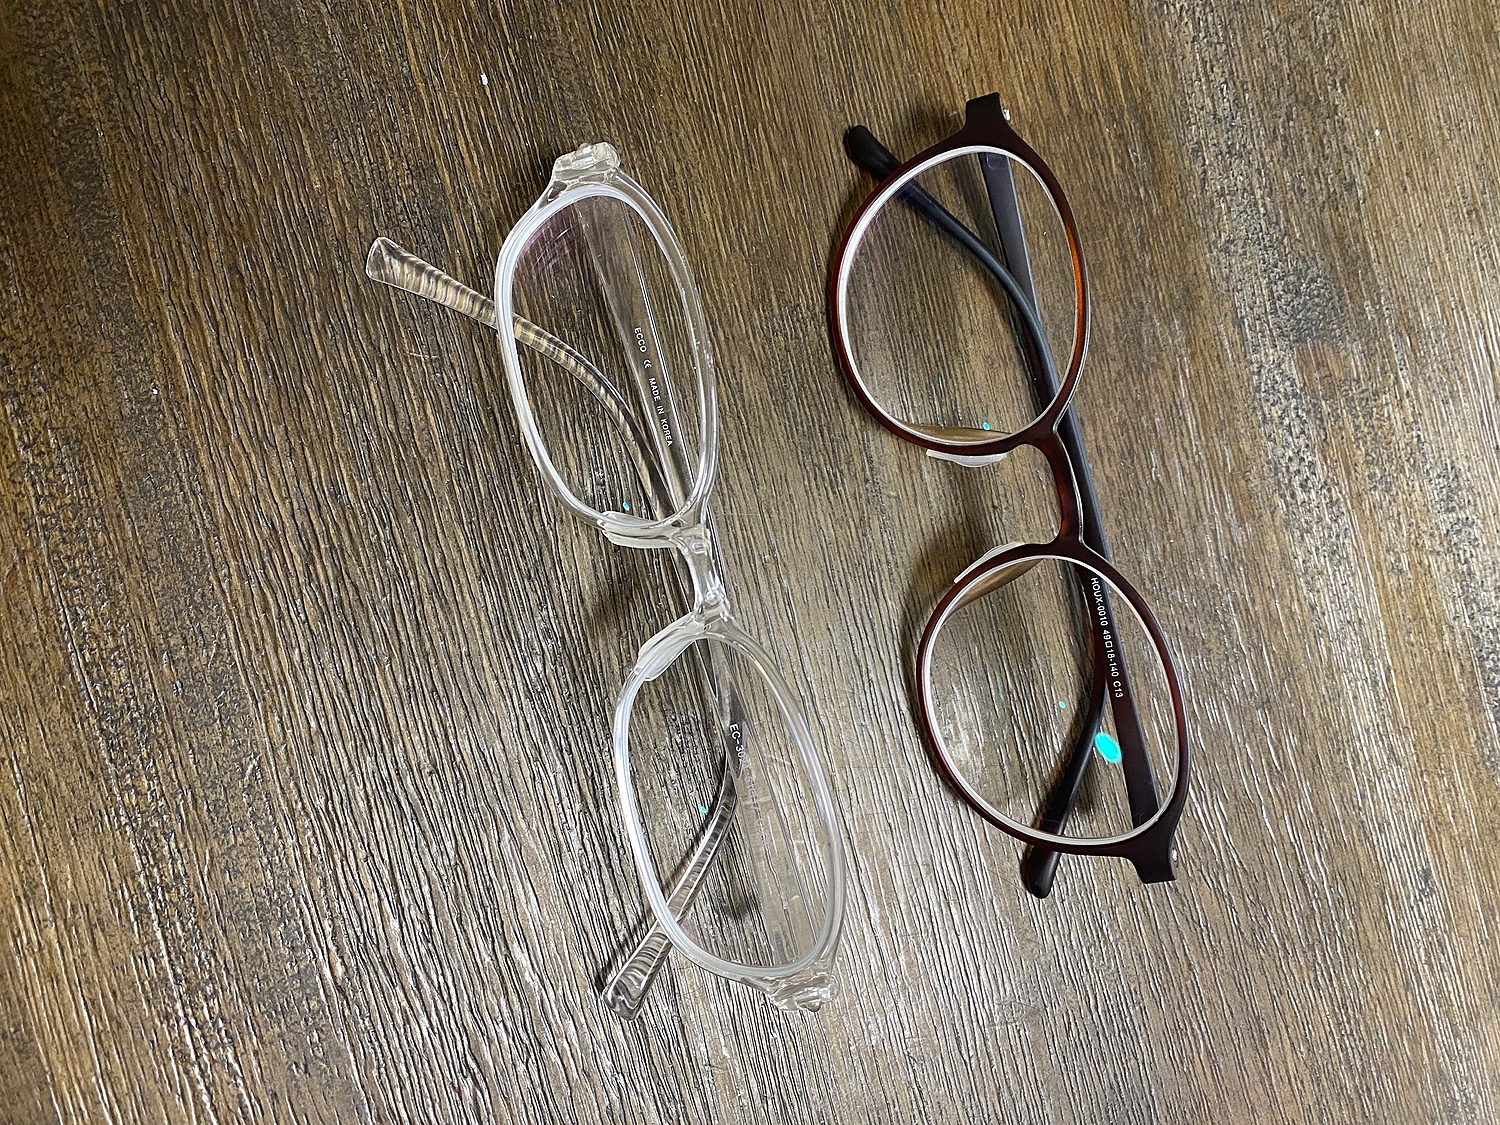 楽天市場 1 60薄型非球面レンズメガネ福袋 近視 乱視対応 フレーム 度入りレンズ メガネ拭き 布ケース付 メガネ サングラスのリュネ2号店 みんなのレビュー 口コミ